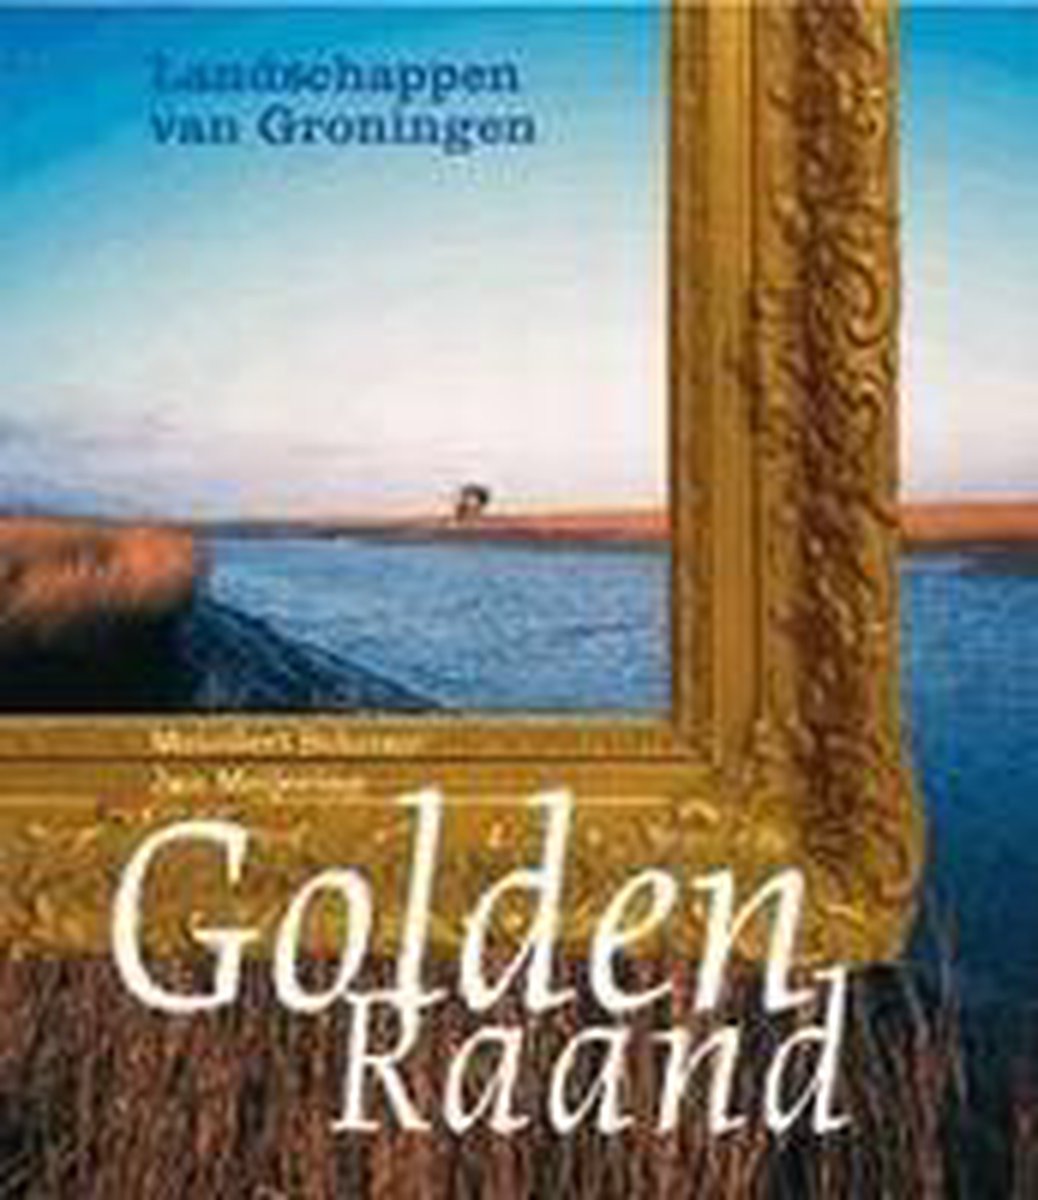 Golden Raand